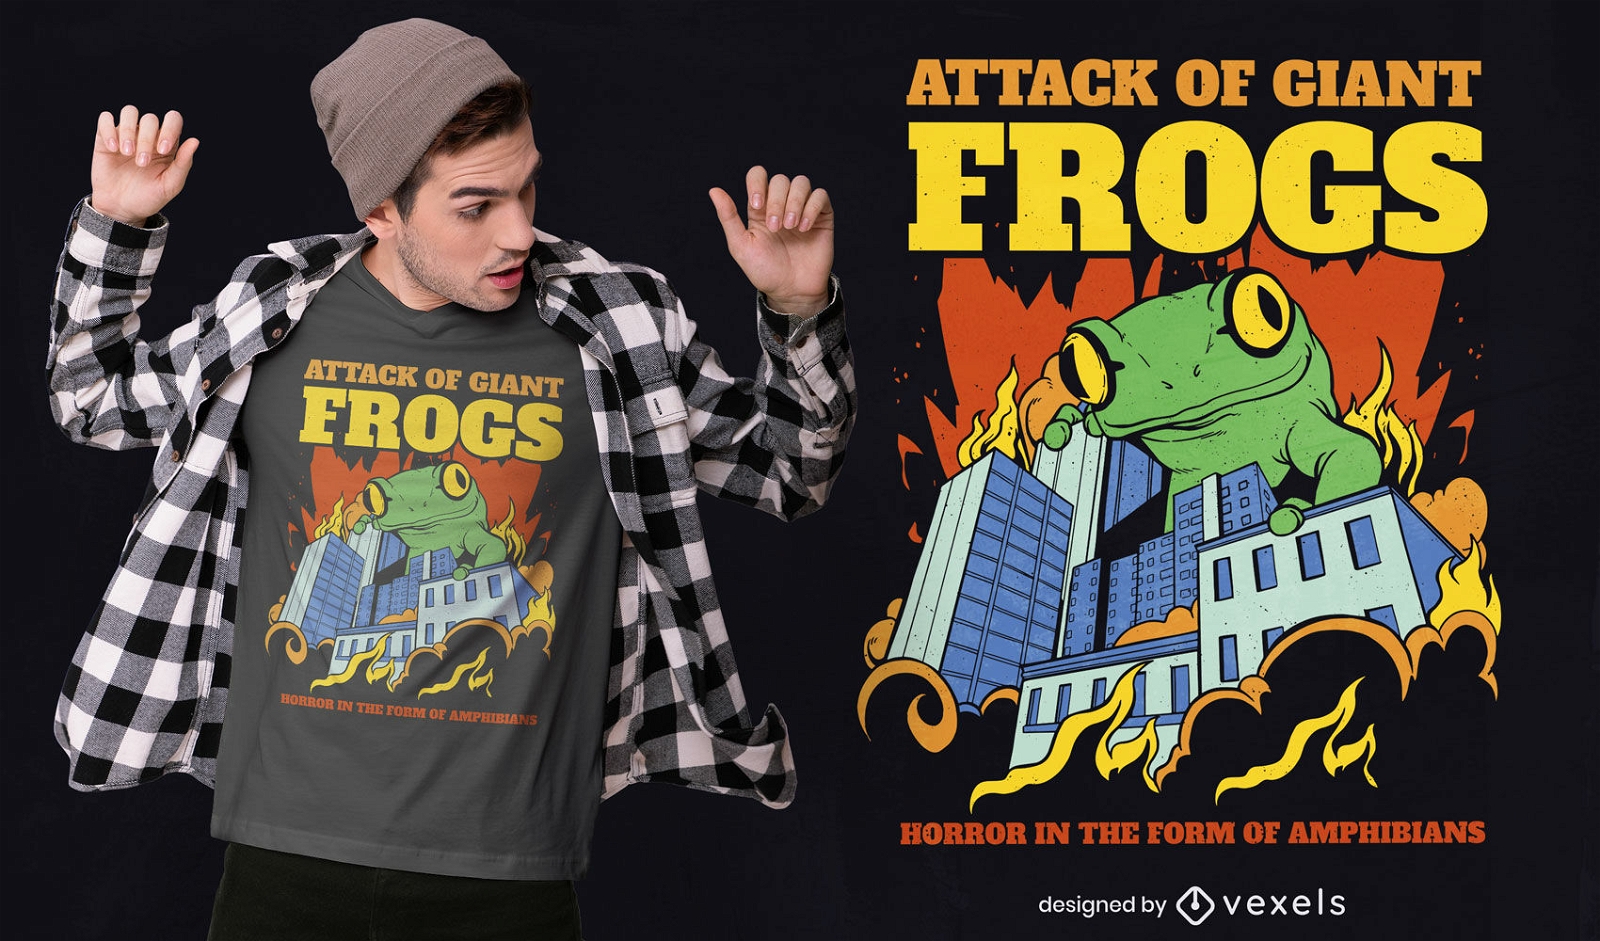 Diseño de camiseta de rana gigante atacando ciudad.